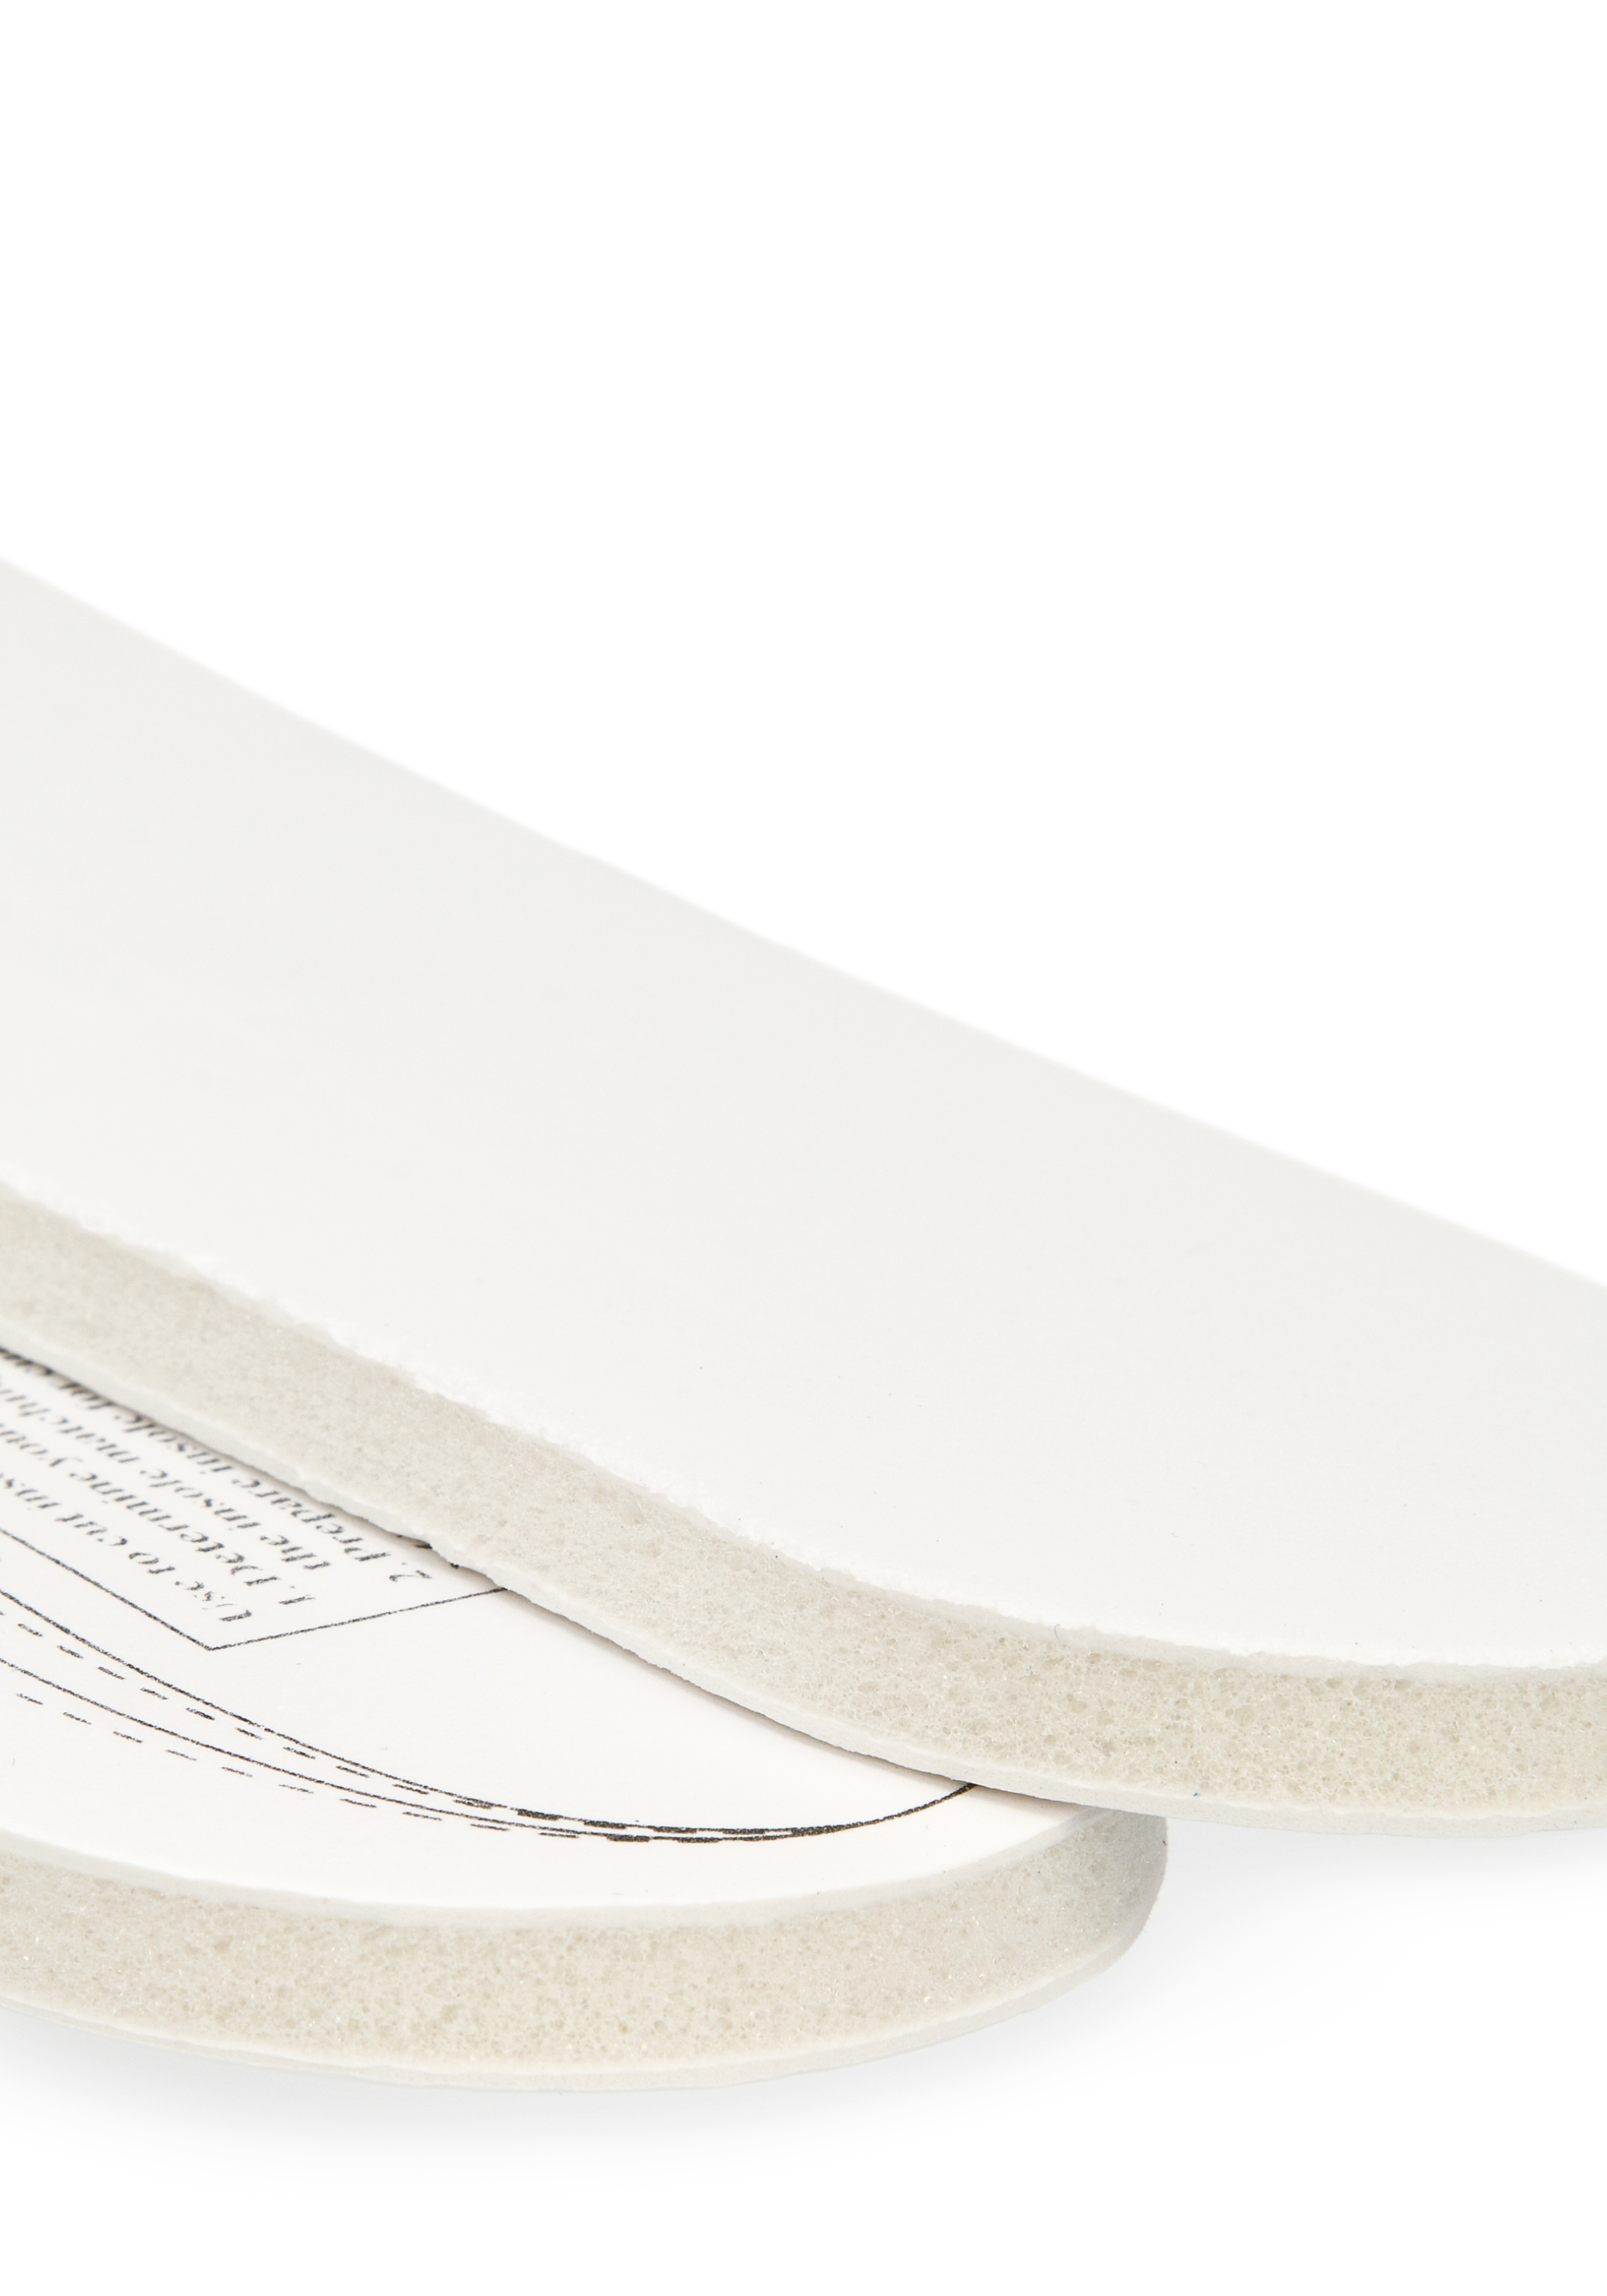 Стельки для обуви с эффектом памяти, 2 пары Bradex, цвет белый, размер универсальный - фото 5